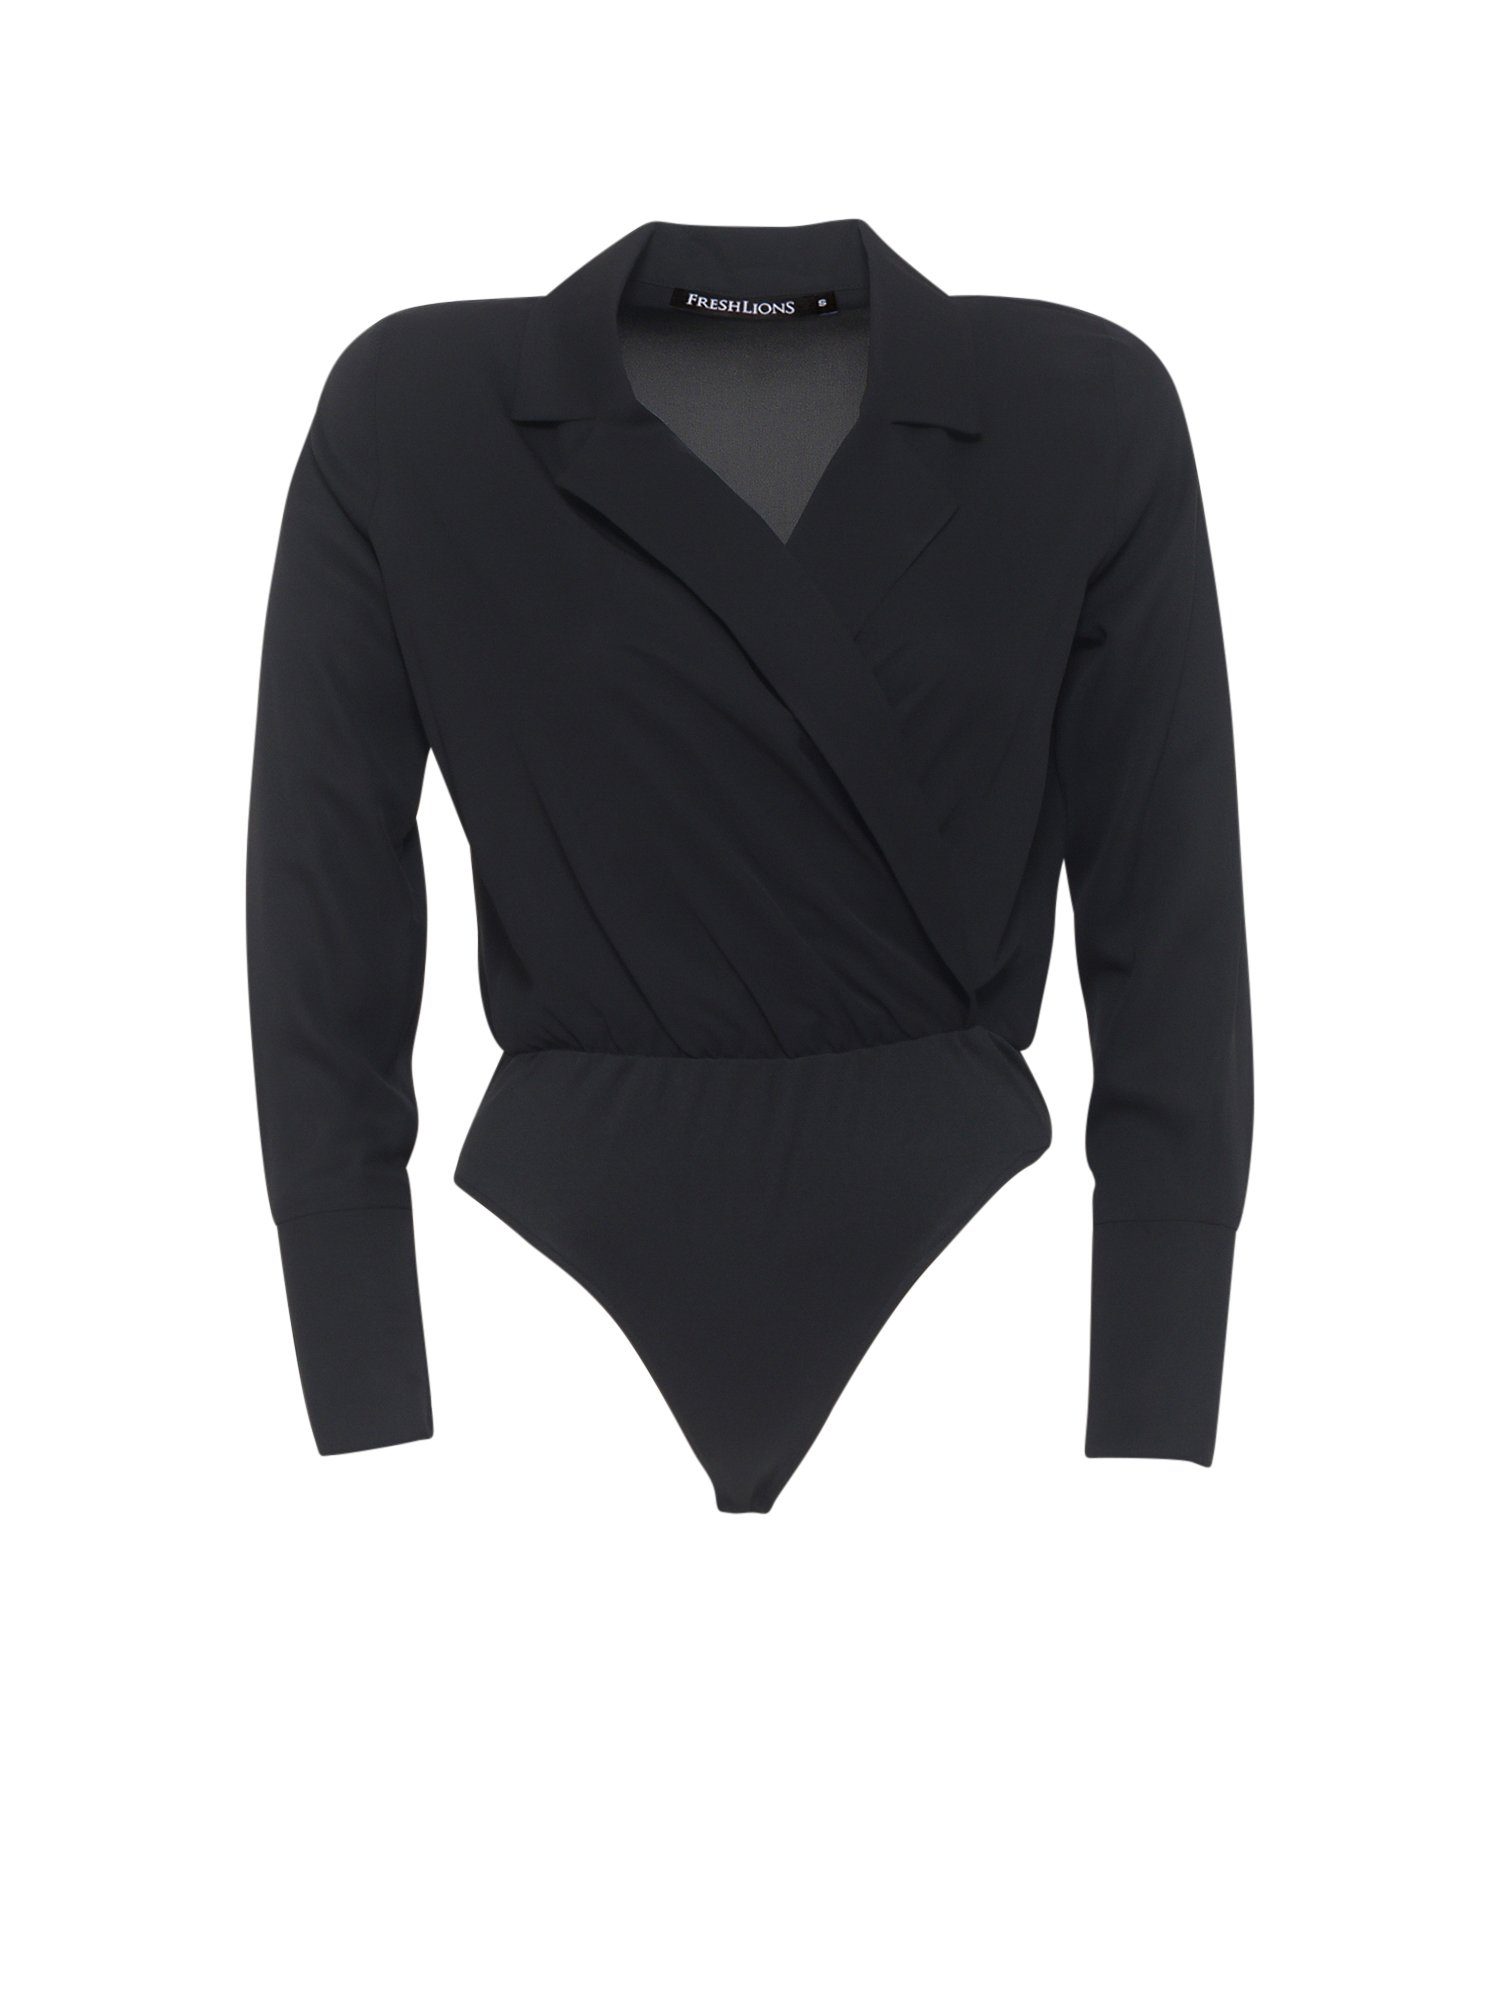 Freshlions Blusenbody Bodysuit mit gewickeltem Ausschnitt 'ARMANDA' Schwarz L Wickel-Design